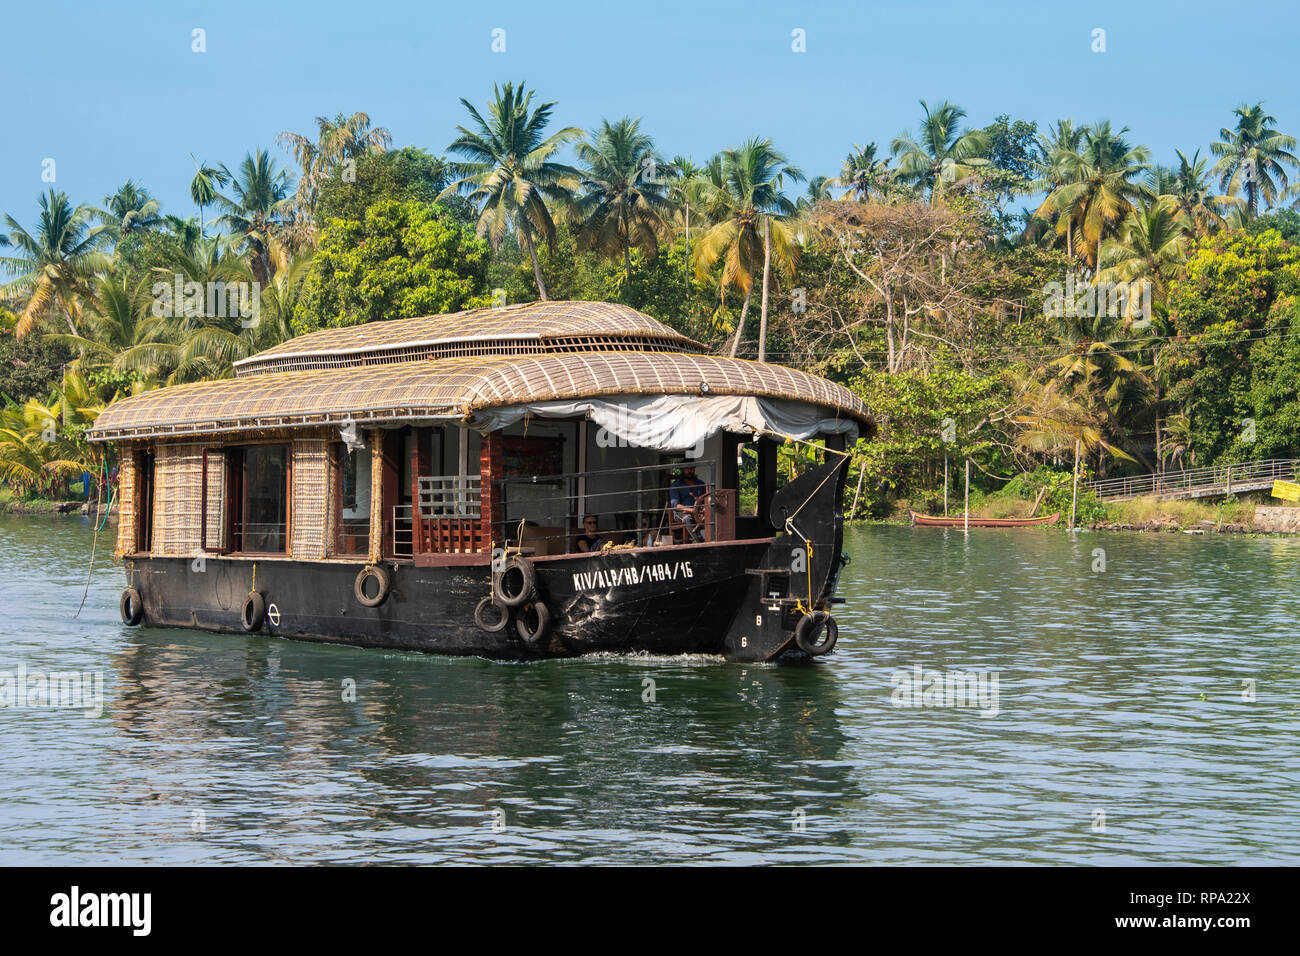 Un exemple typique d'une journée de croisière en bateau traditionnel flottant sur l'eau dormante Keralan lors d'une journée ensoleillée avec ciel bleu et de palmiers. Banque D'Images